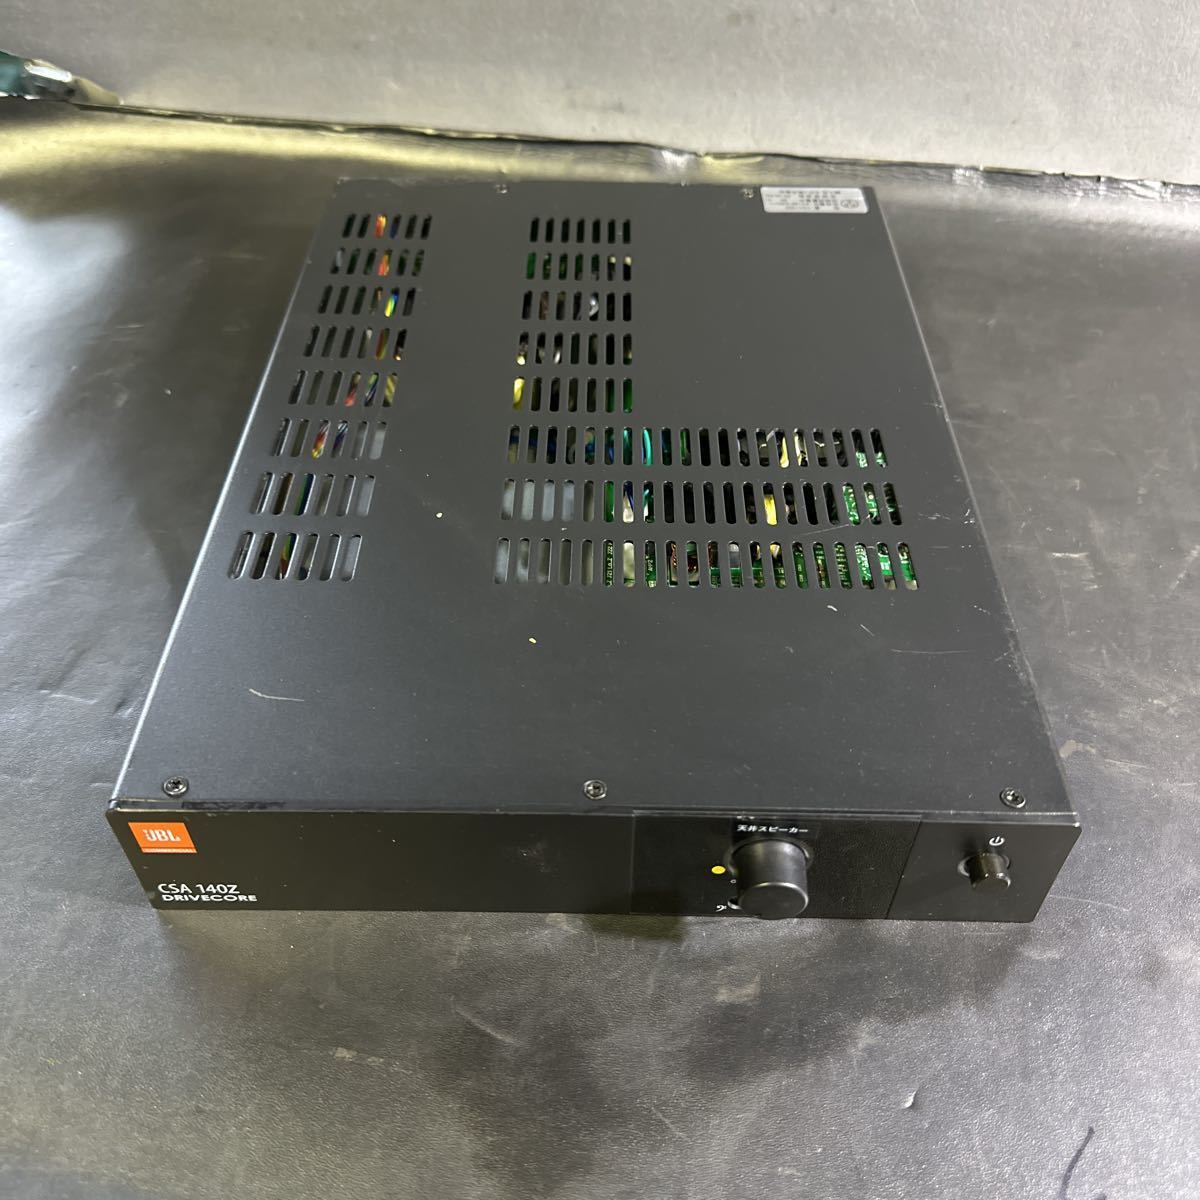 [D709]JBL CSA140Z power amplifier outlet 